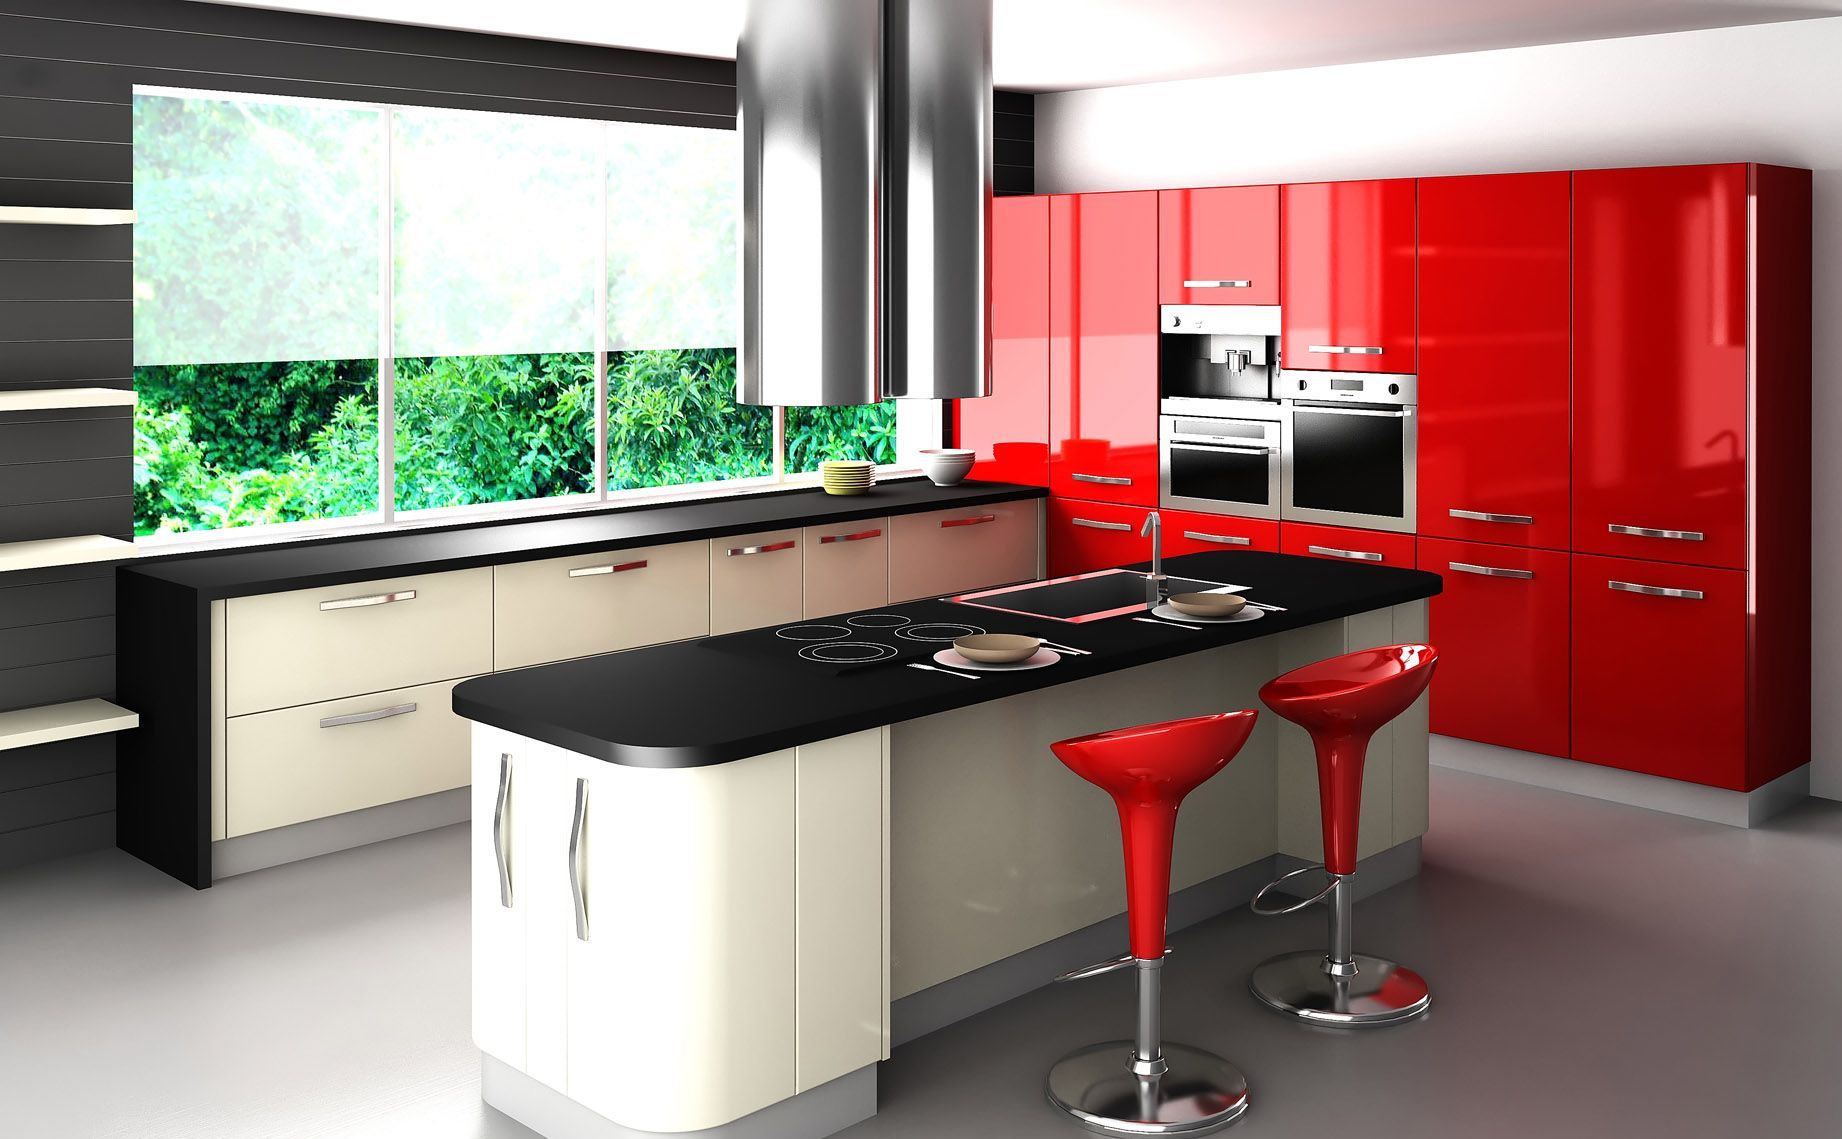 Best-kitchen-designs-as-small-kitchen-design